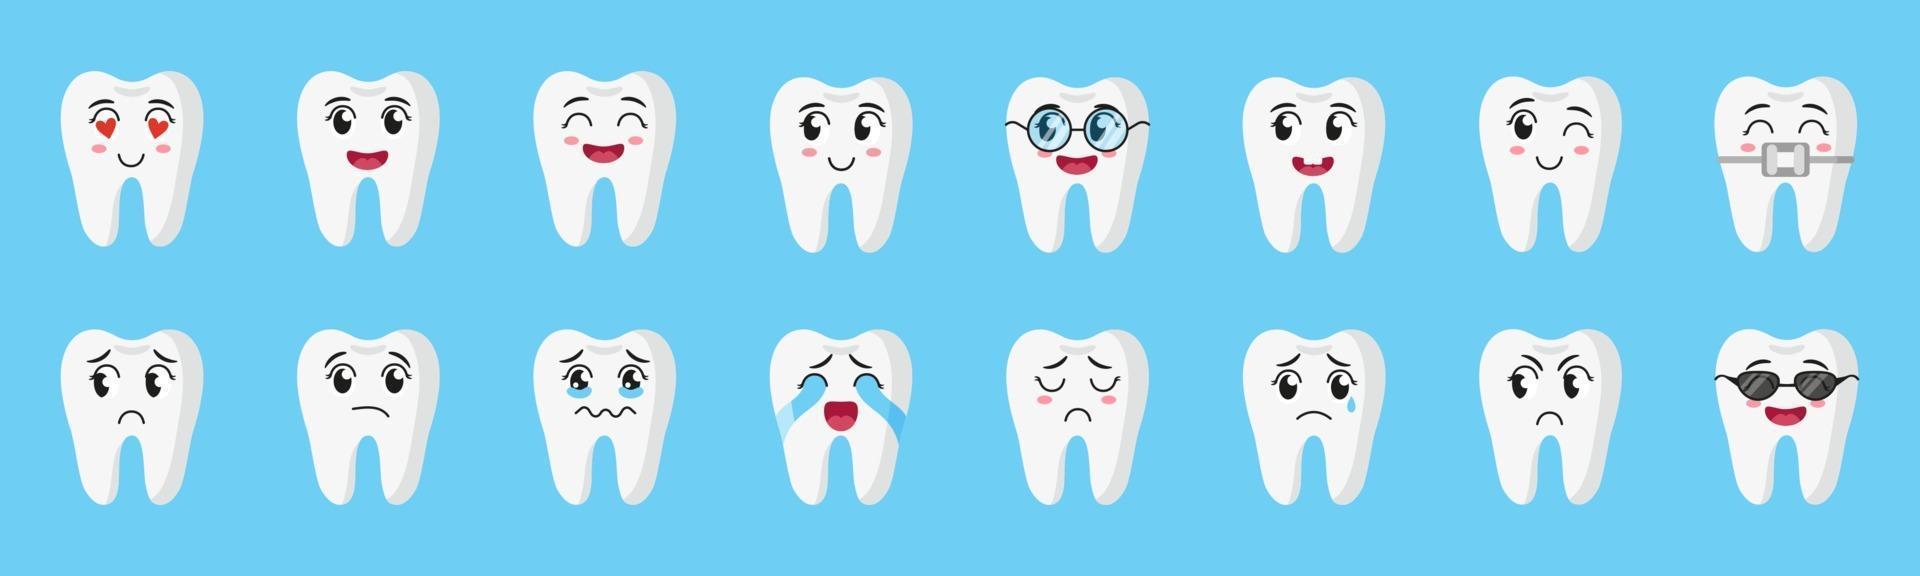 vector cartoon conjunto de personagens fofinhos de dentes com emoções diferentes feliz, triste, chorando, alegre, sorrindo, rindo